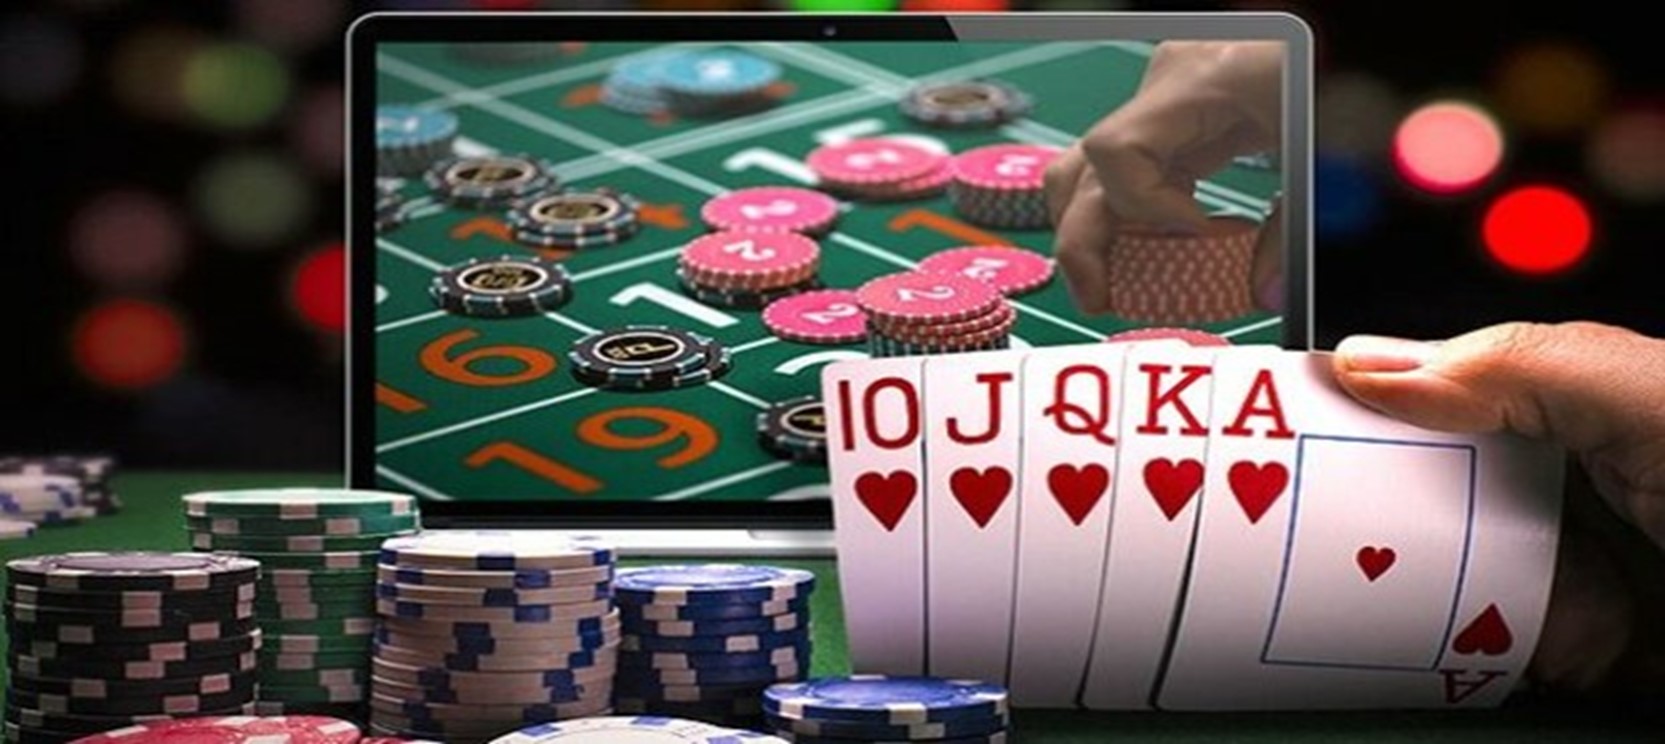 Real Money Gambling Sites Singapore